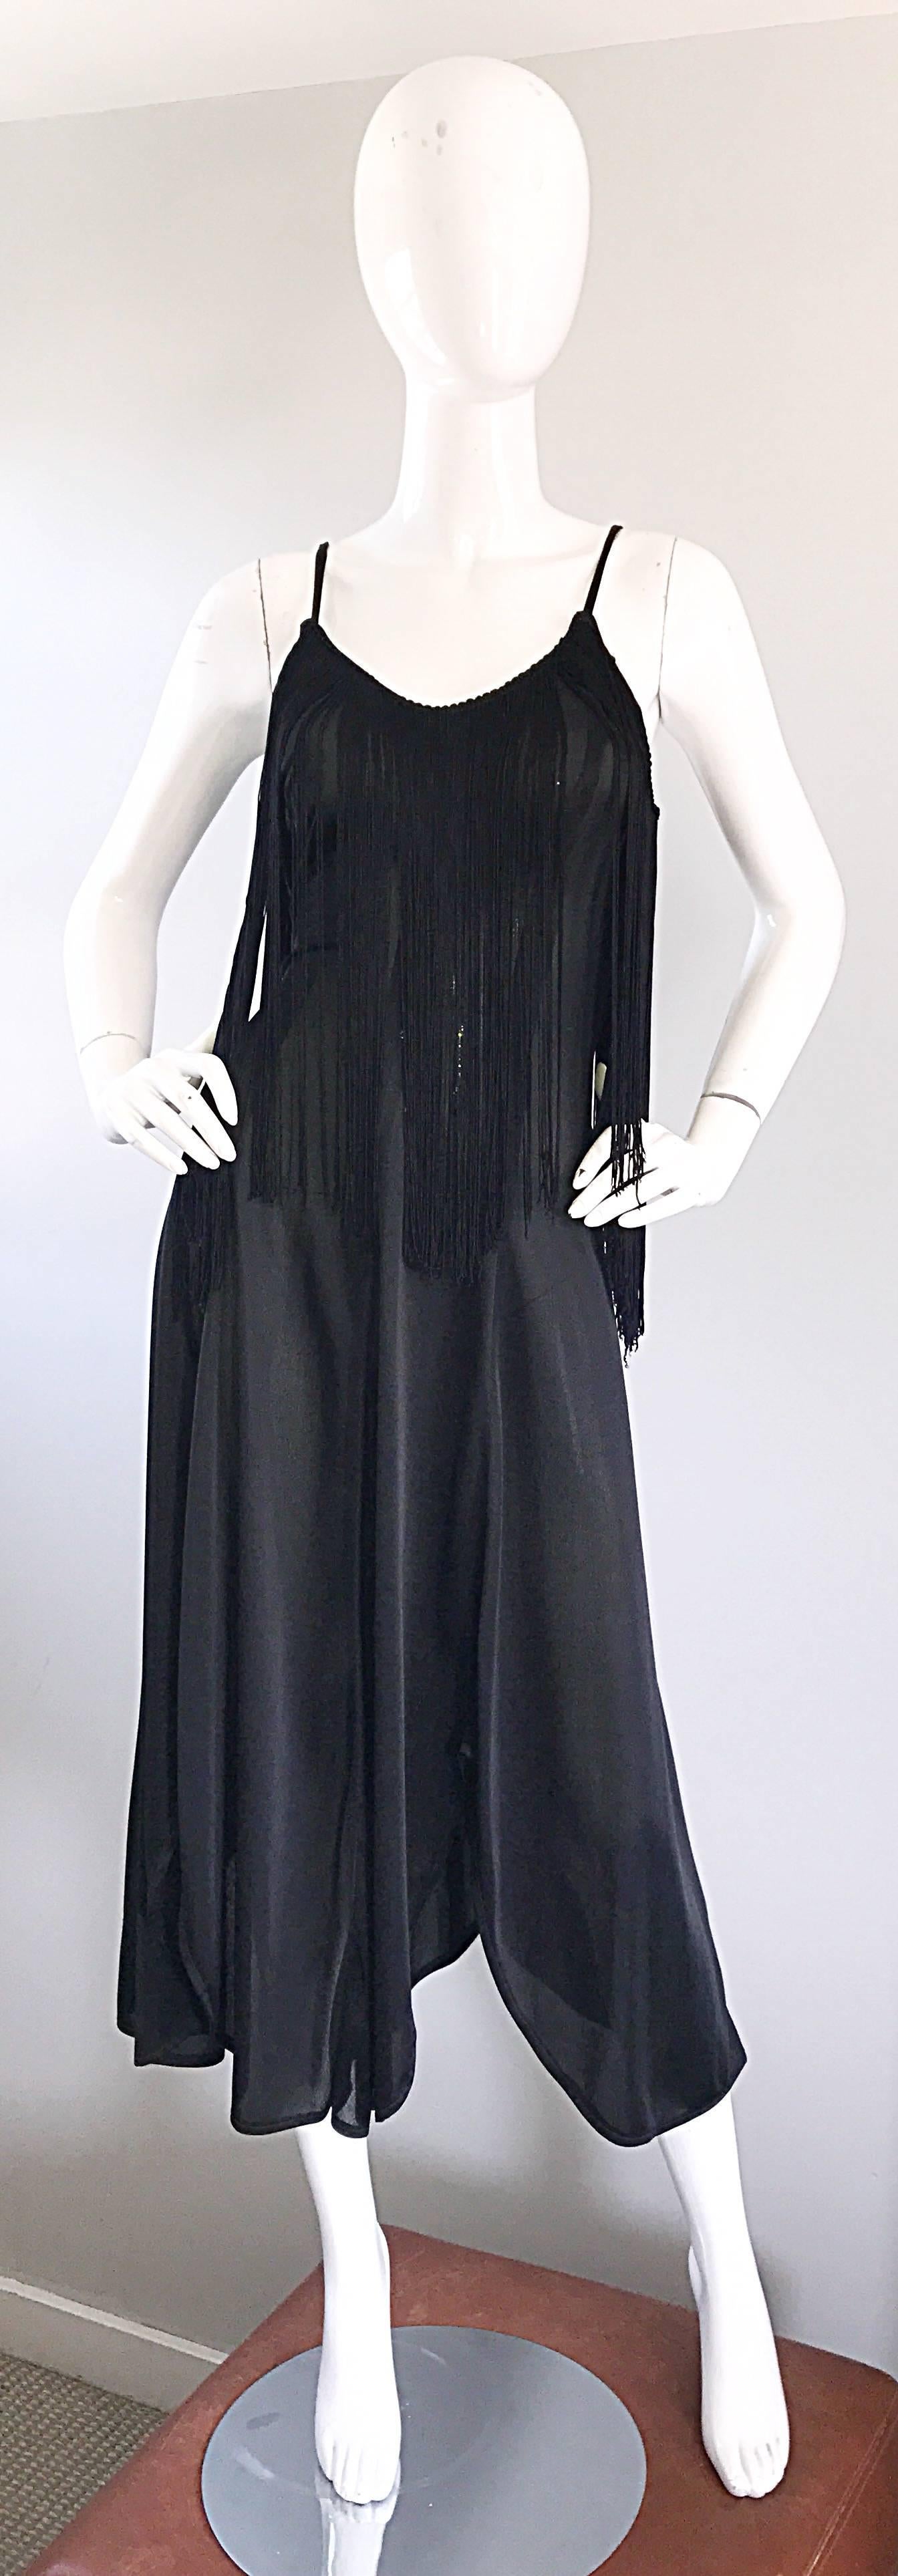 Unglaubliches schwarzes Disco-Fransenkleid aus den 70ern! Es hat einen koketten Taschentuch-Saum und ein tailliertes Mieder. Die vielen Fransen an der Büste machen das Kleid zu einem tollen Tanzkleid! Es ist definitiv eine Ode an die 1920er / 20er